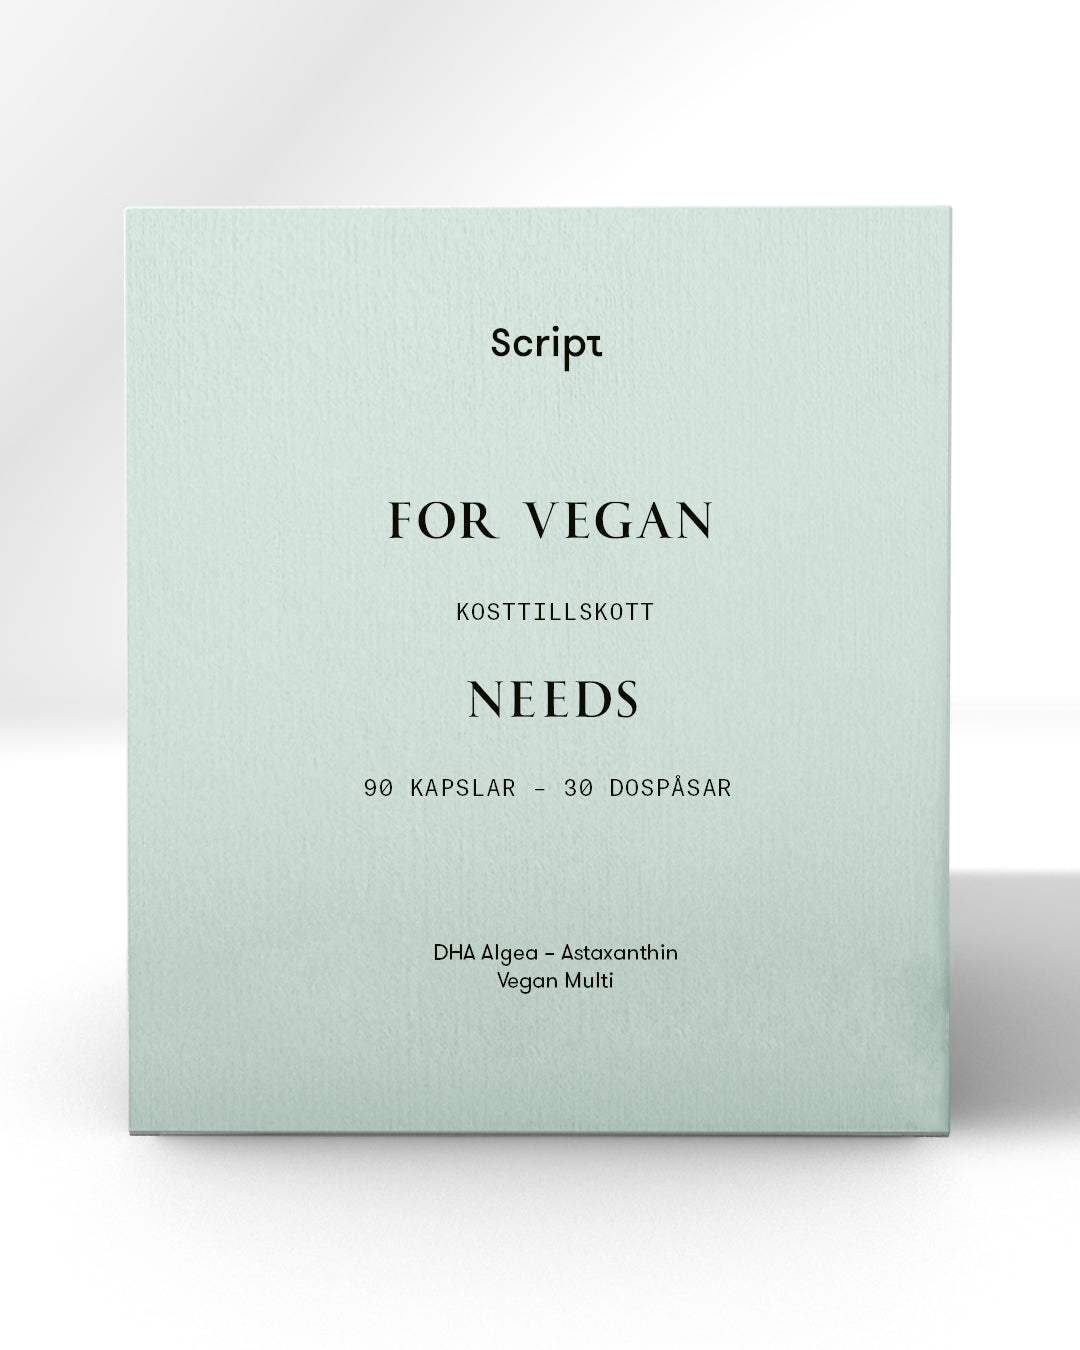 For Vegan Needs Kit - 30 dospåsar